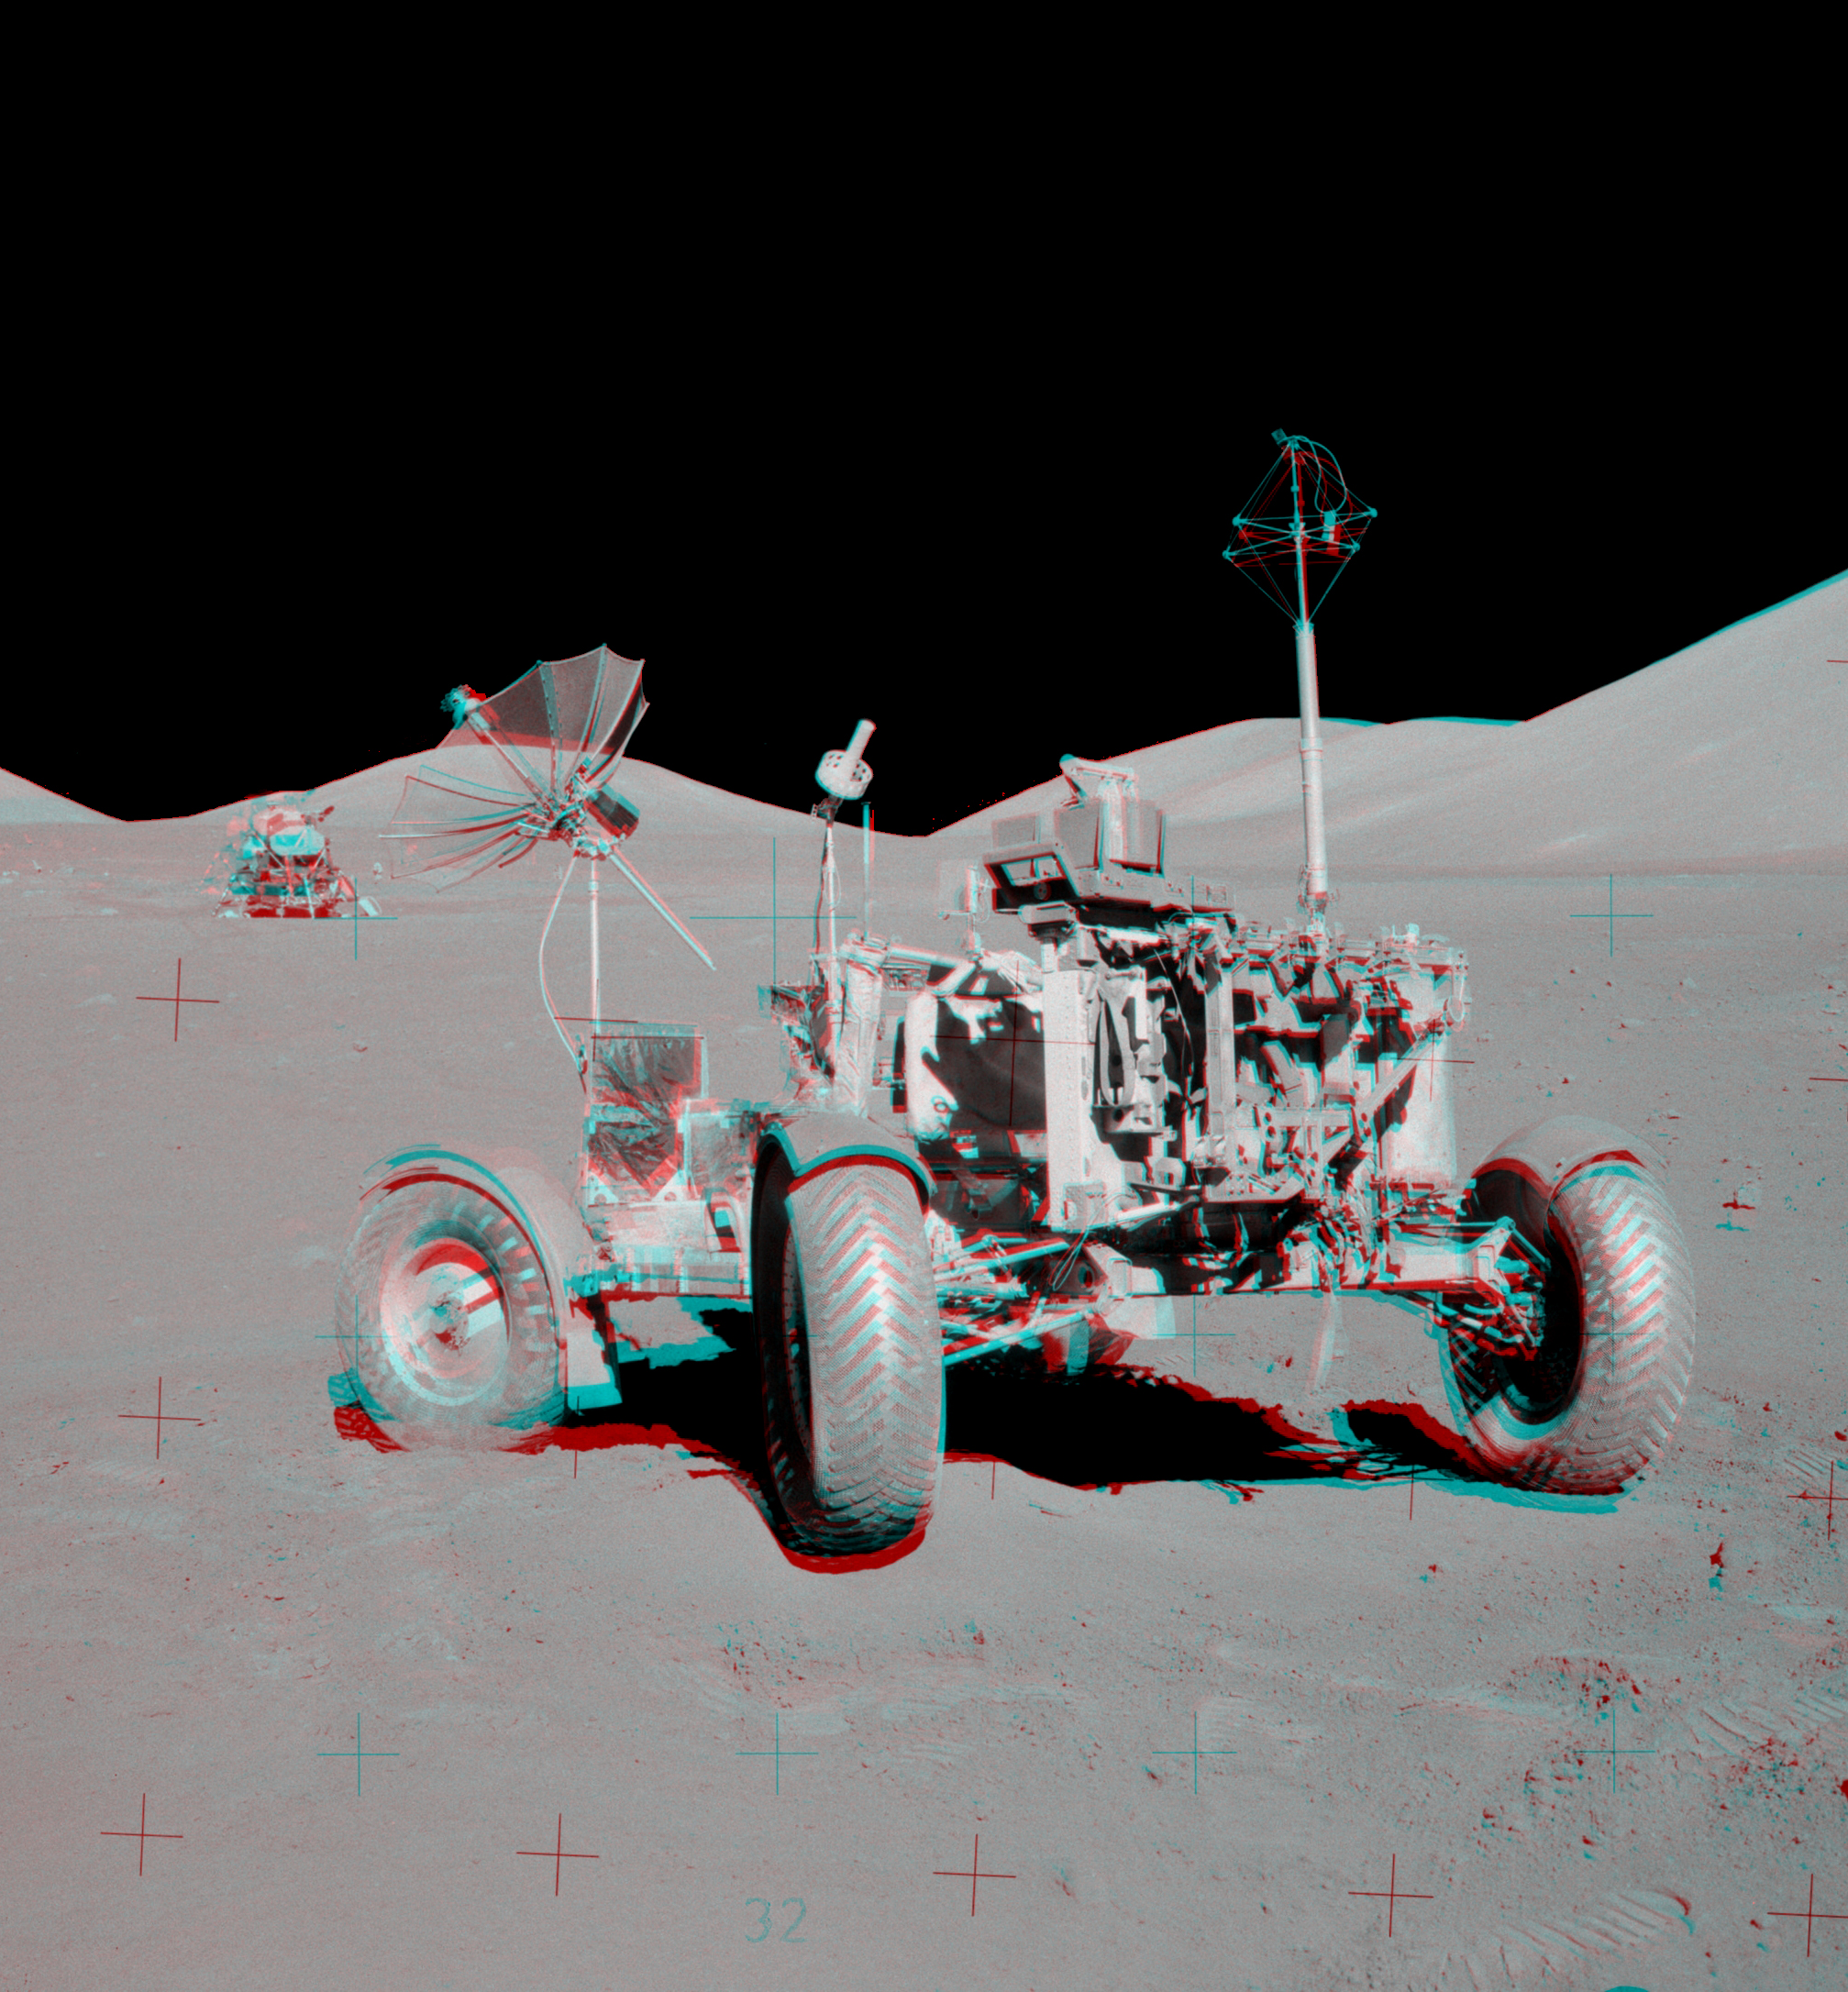 Die Anaglyphe zeigt den Mondrover  und das Landemodul der Apollo-Mission 17 im Taurus-Littrow-Tal.